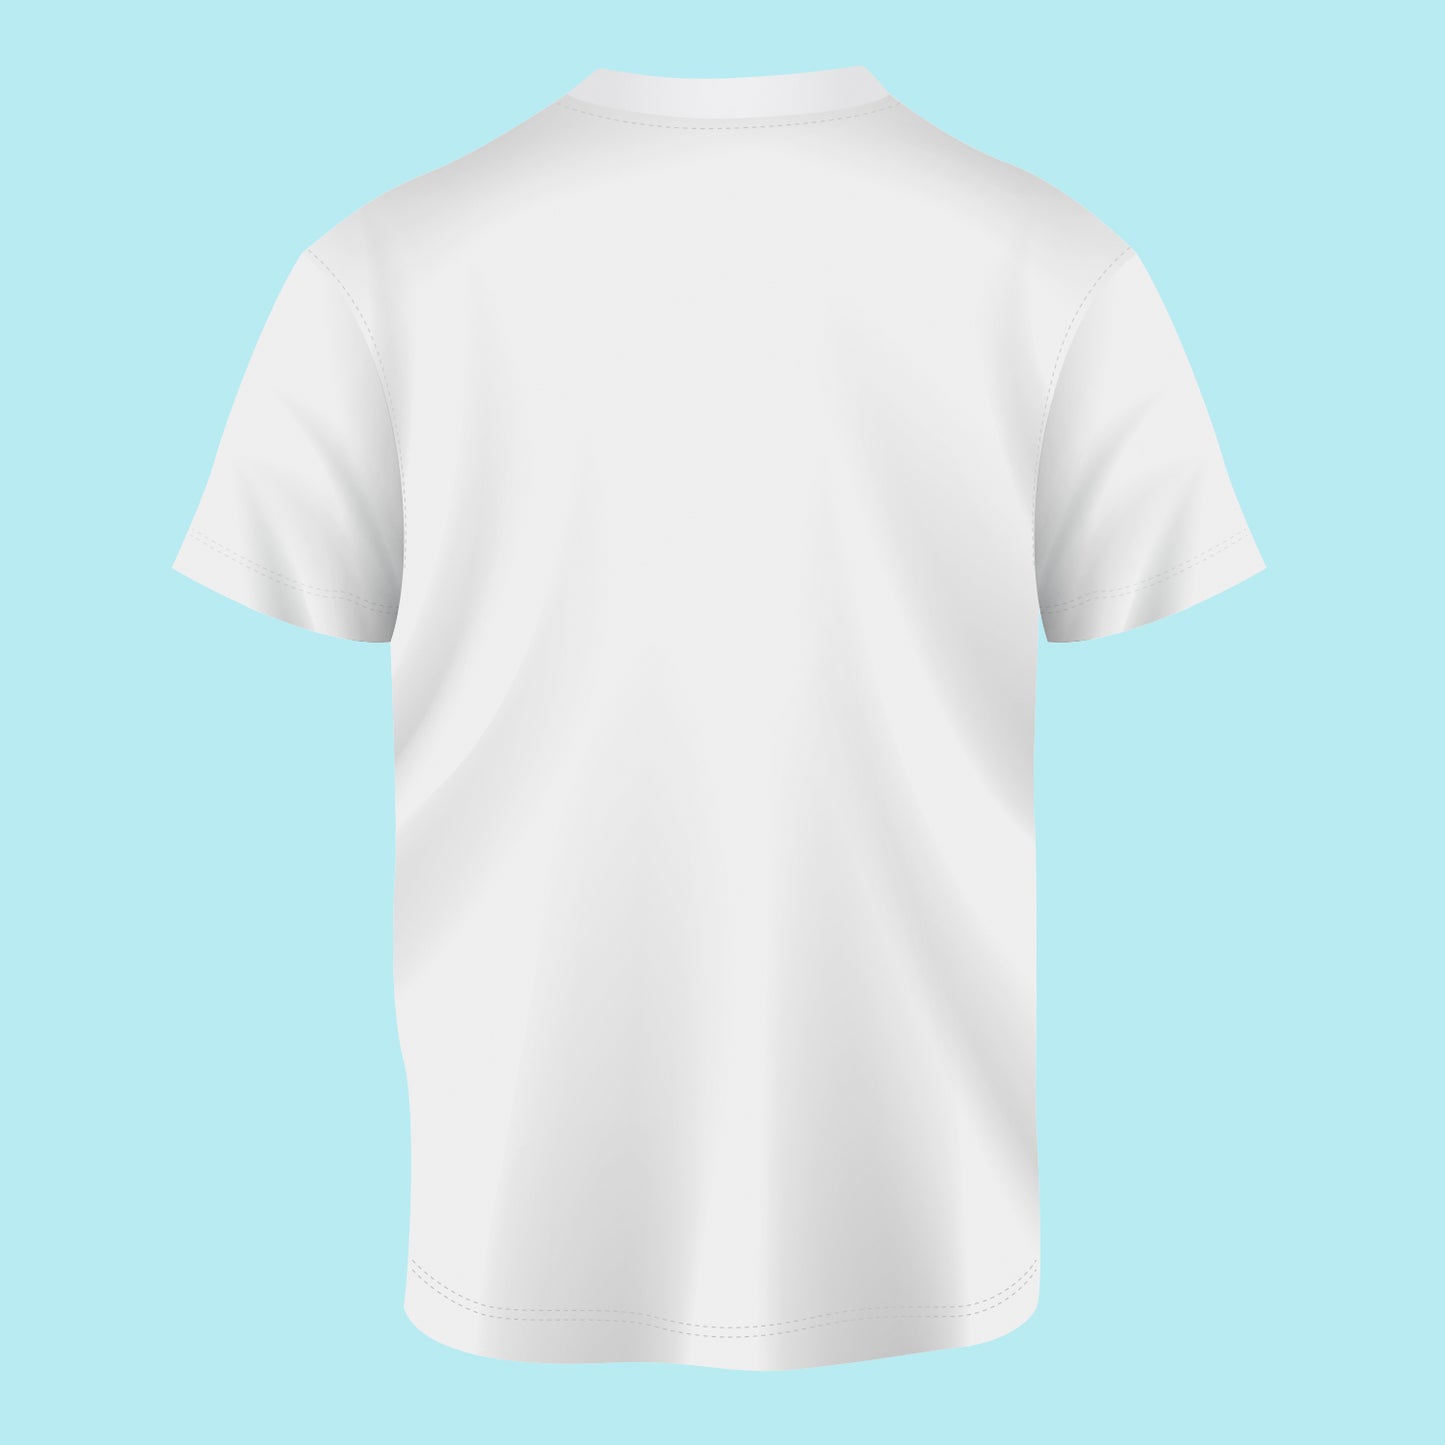 Om Namah Shivay 2 Regular Fit T-shirt